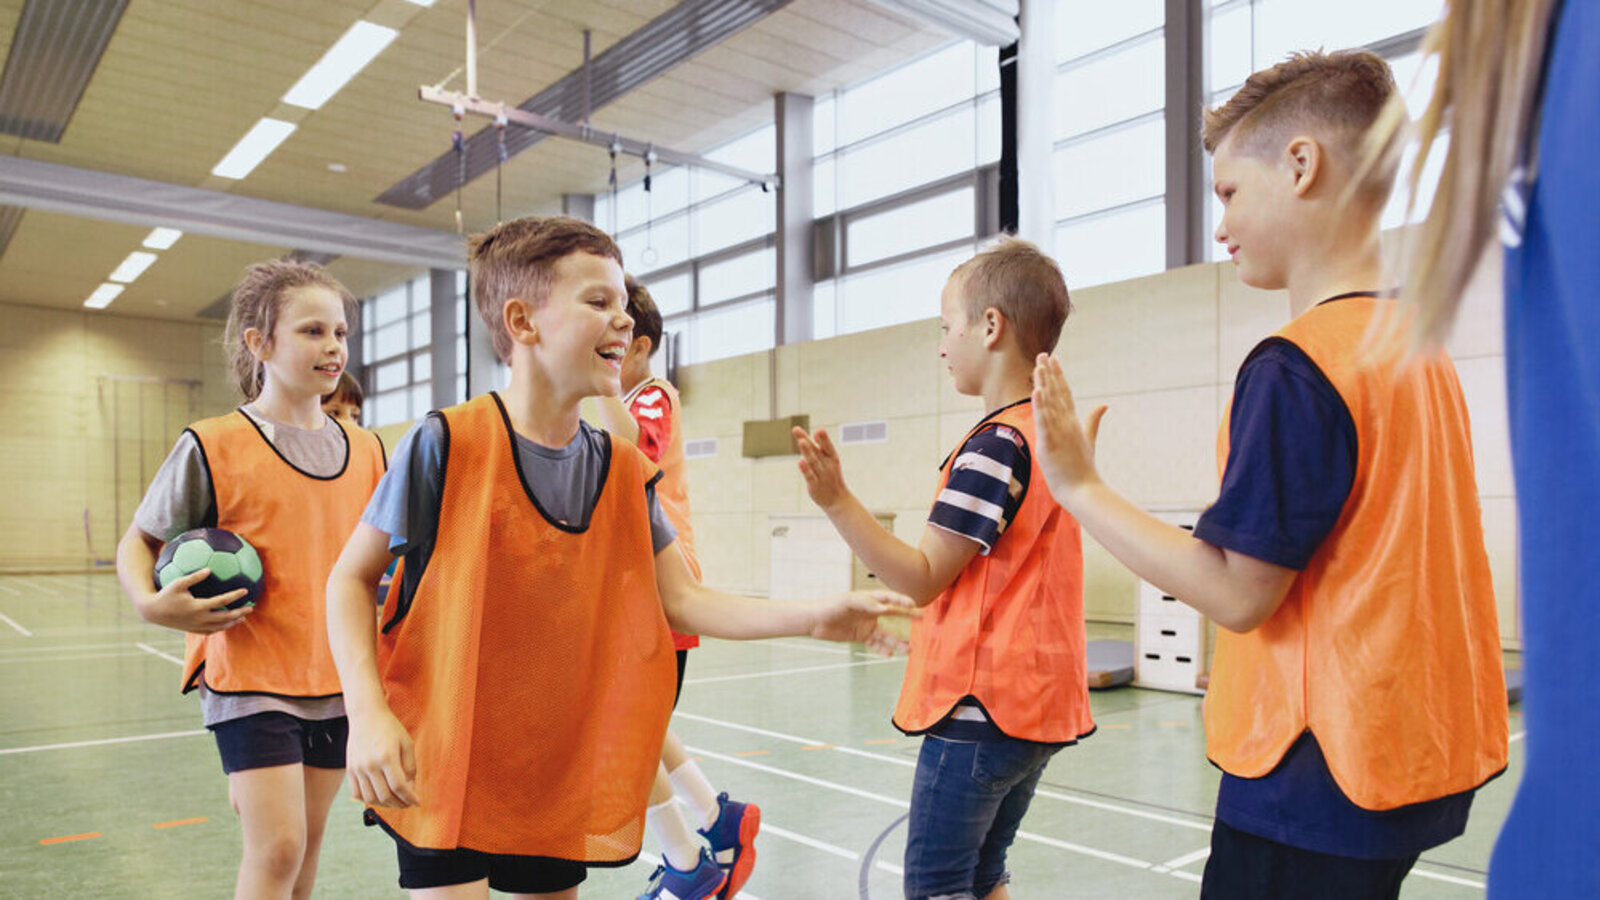 Kinder klatschen sich beim Sport gegenseitig ab